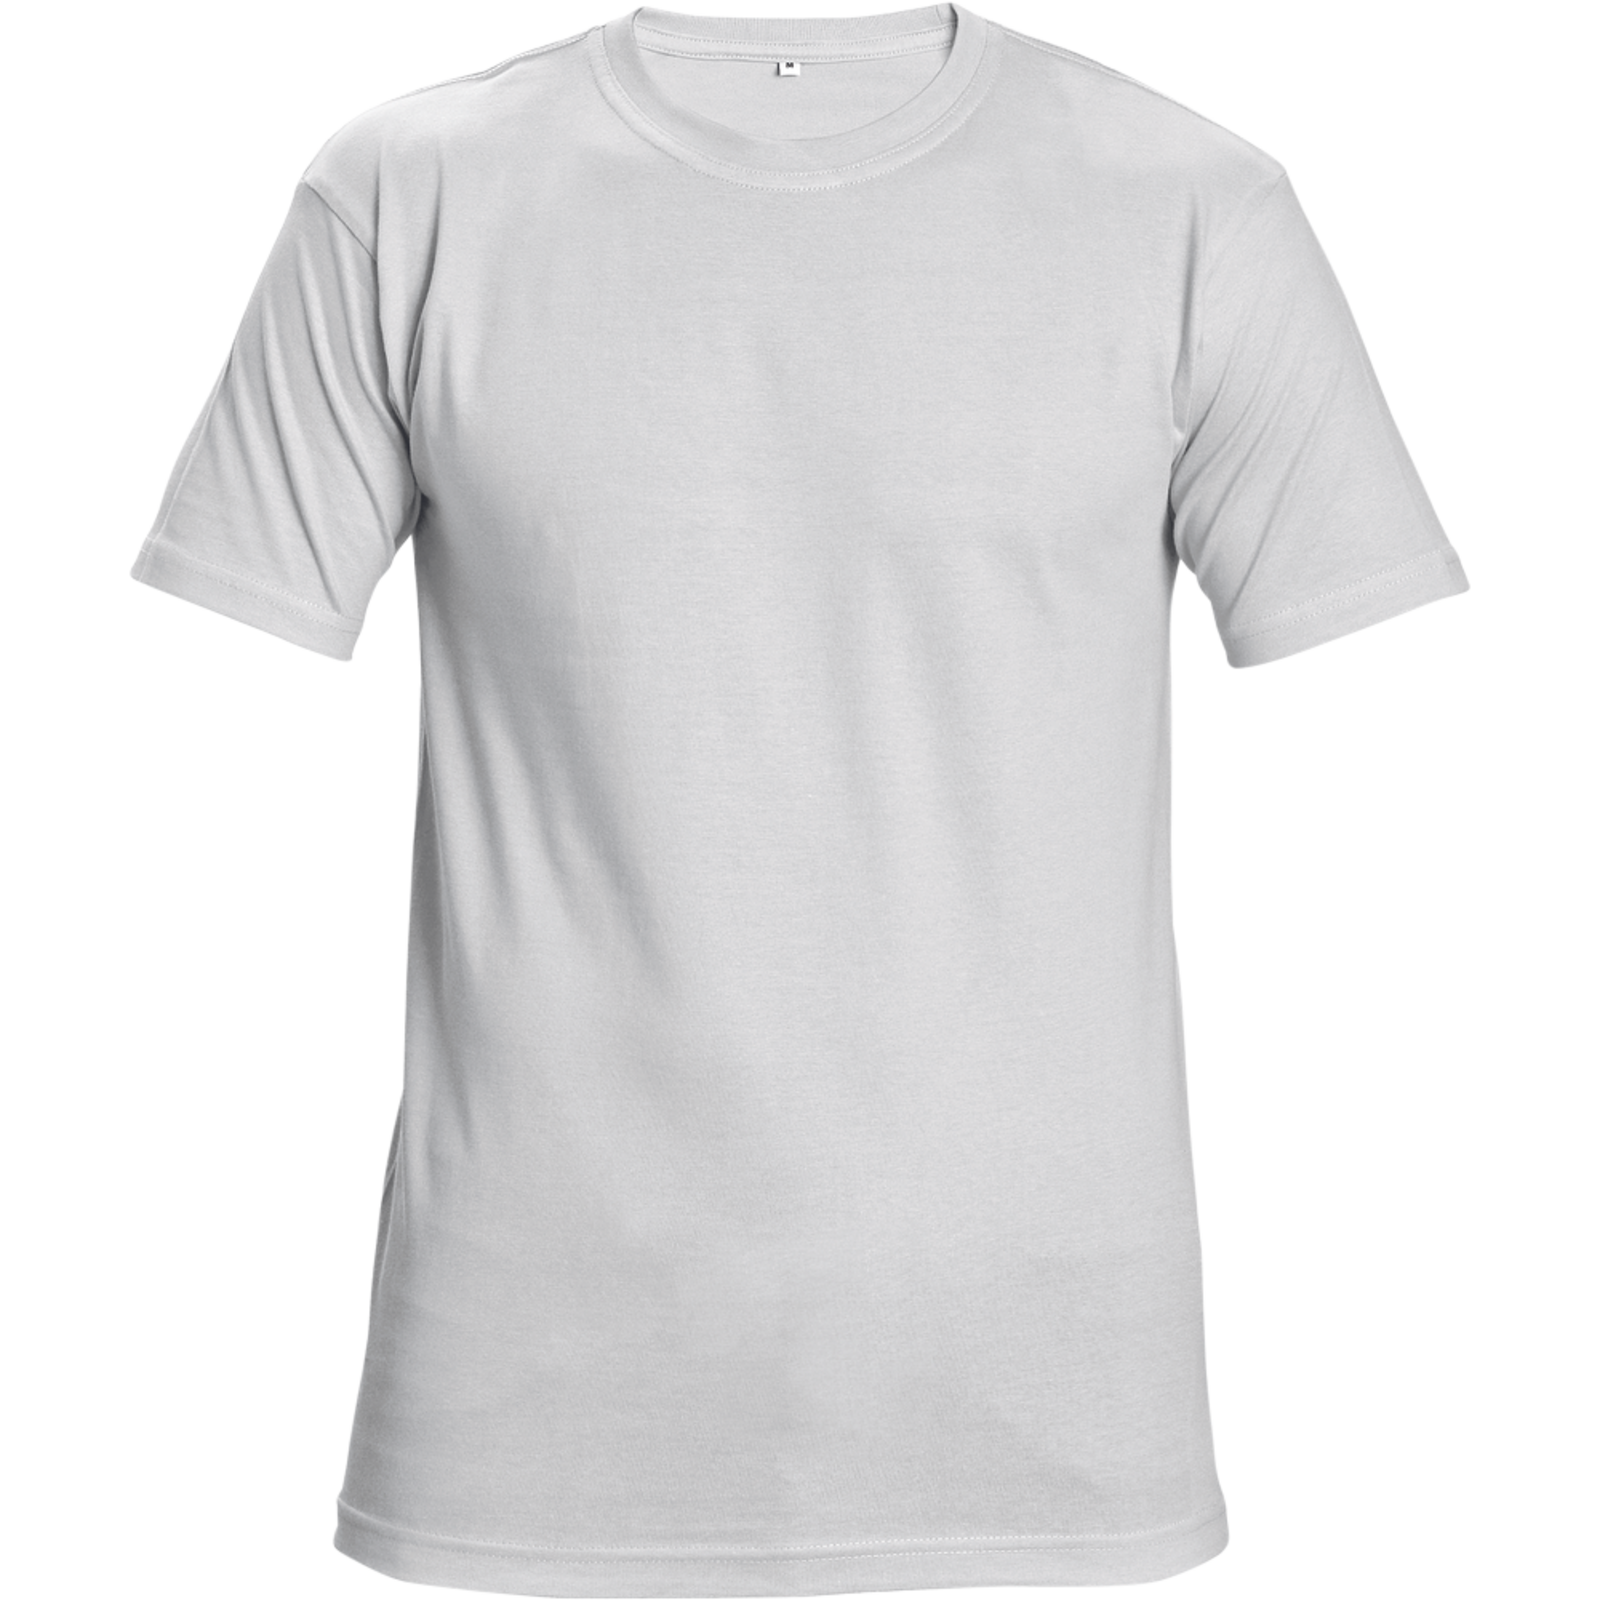 Tričko s krátkym rukávom Teesta unisex - veľkosť: XXL, farba: biela